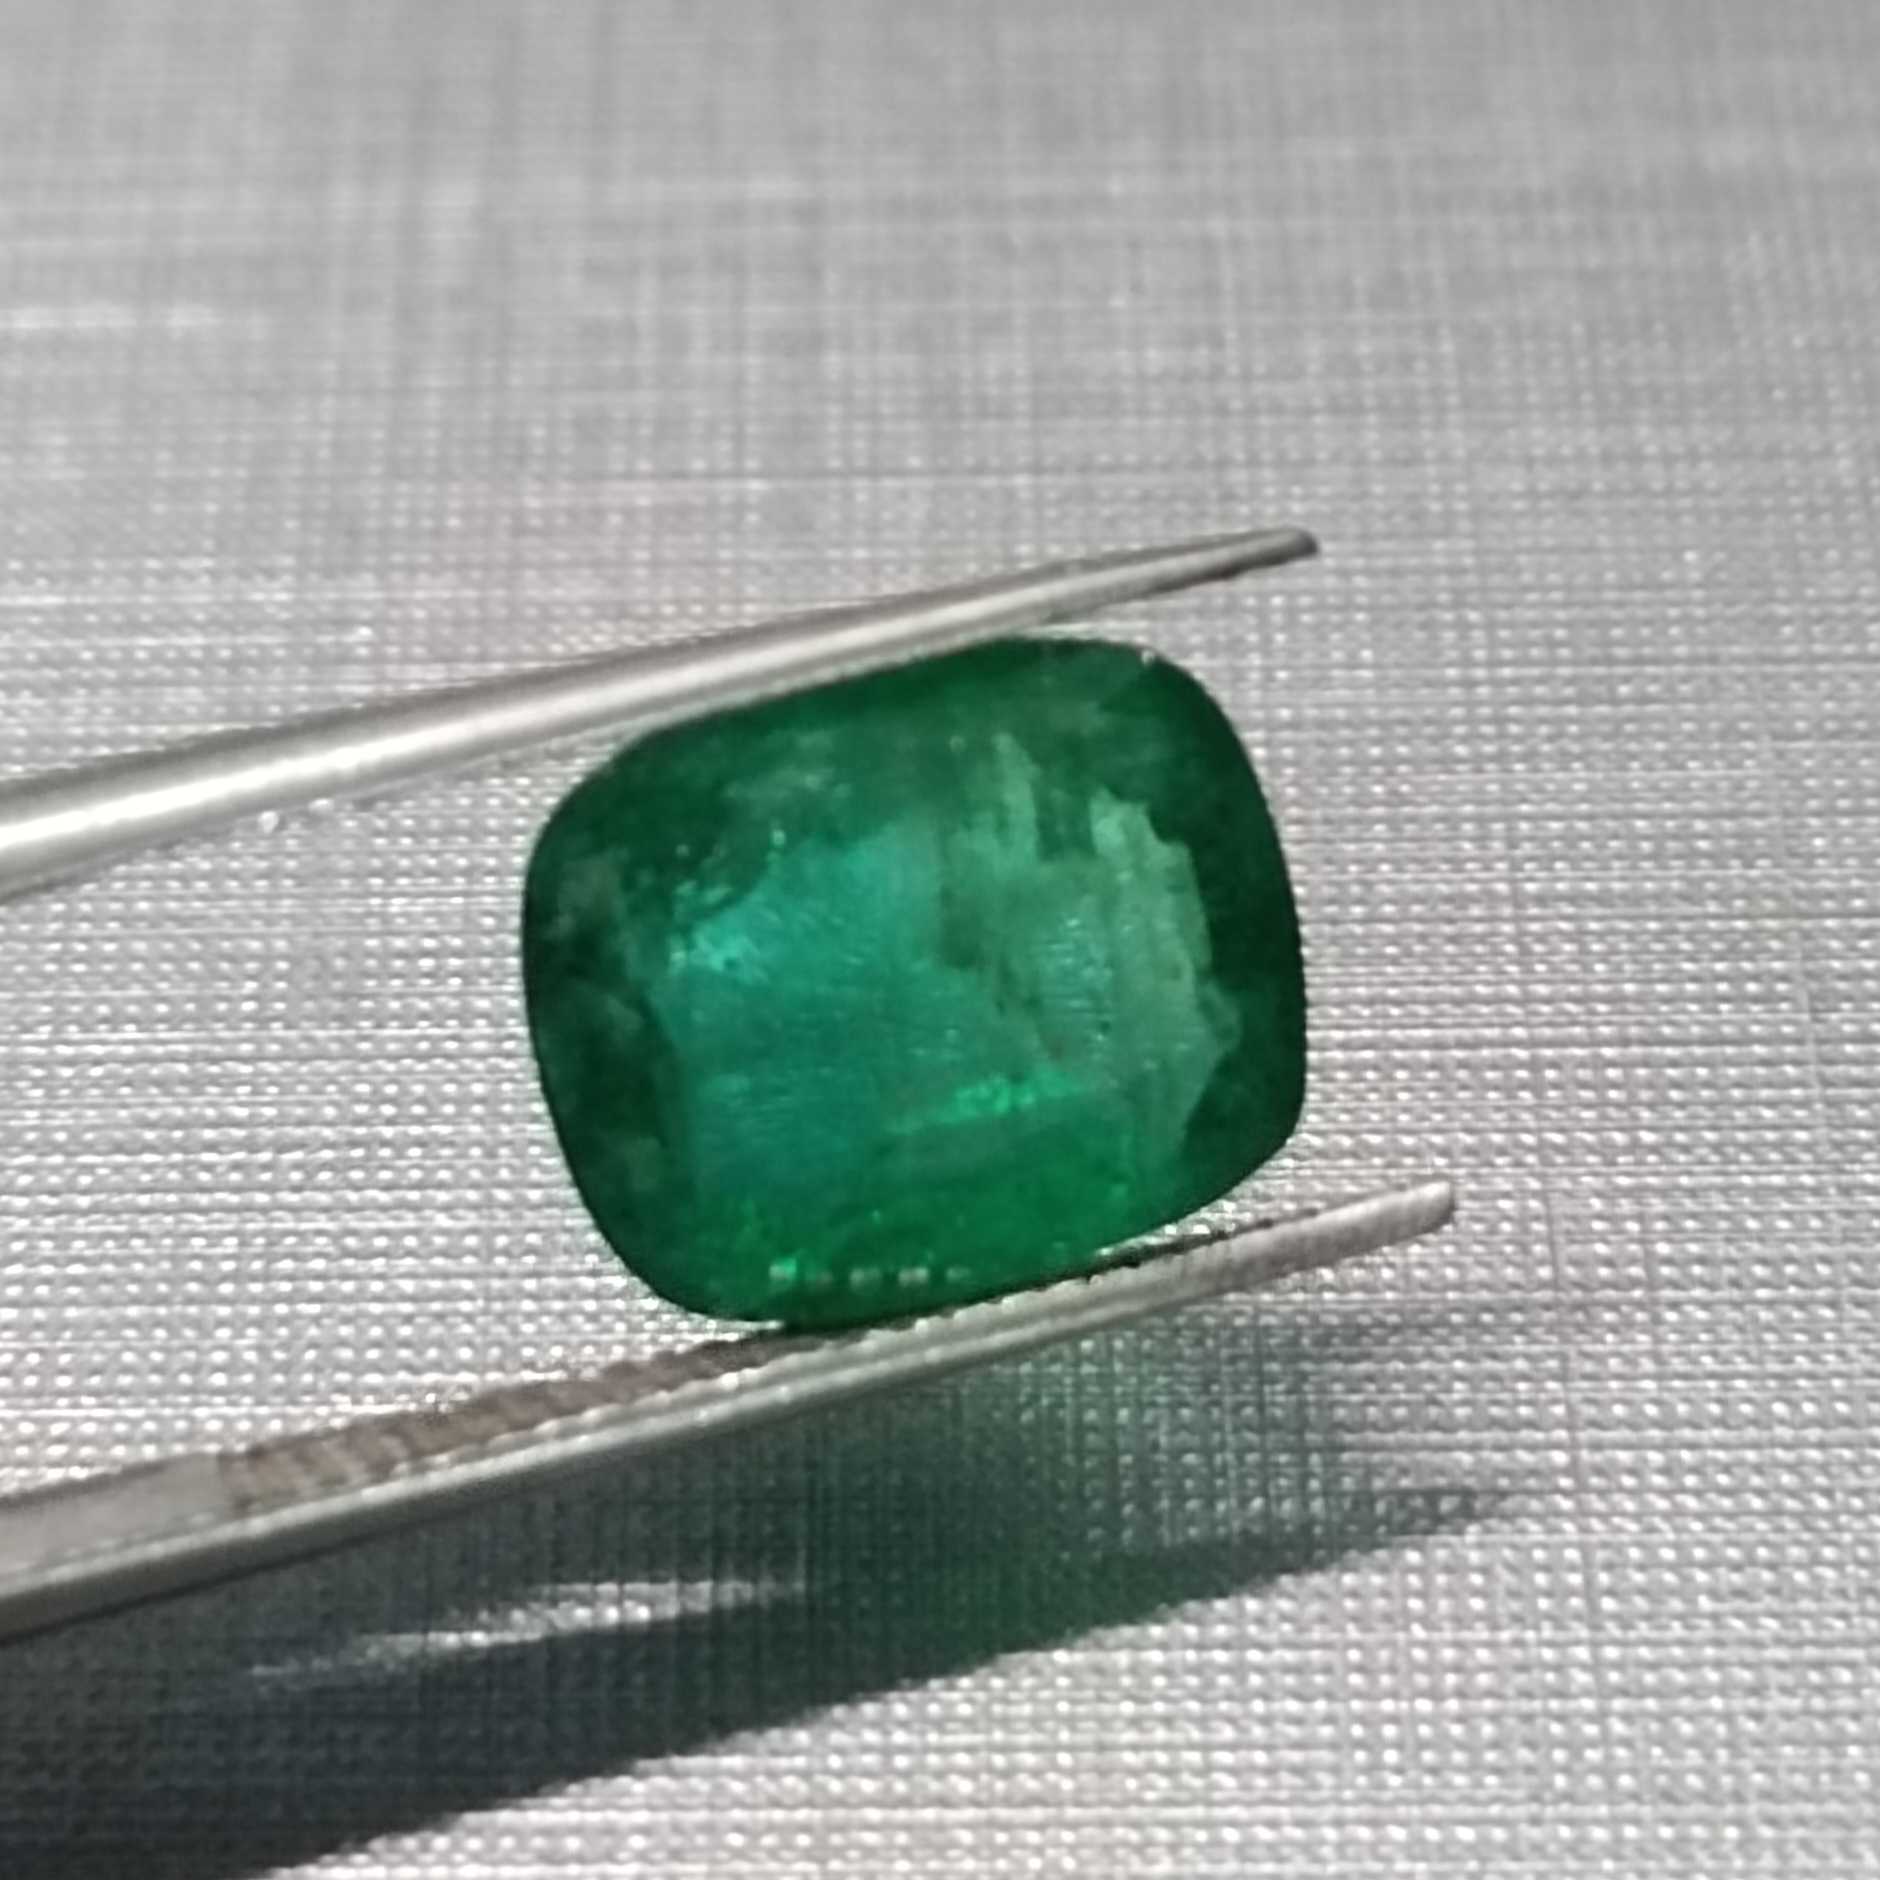  3.22ct Medium Deep Zambian Green Cushion Cut Emerald 8.35*10.1